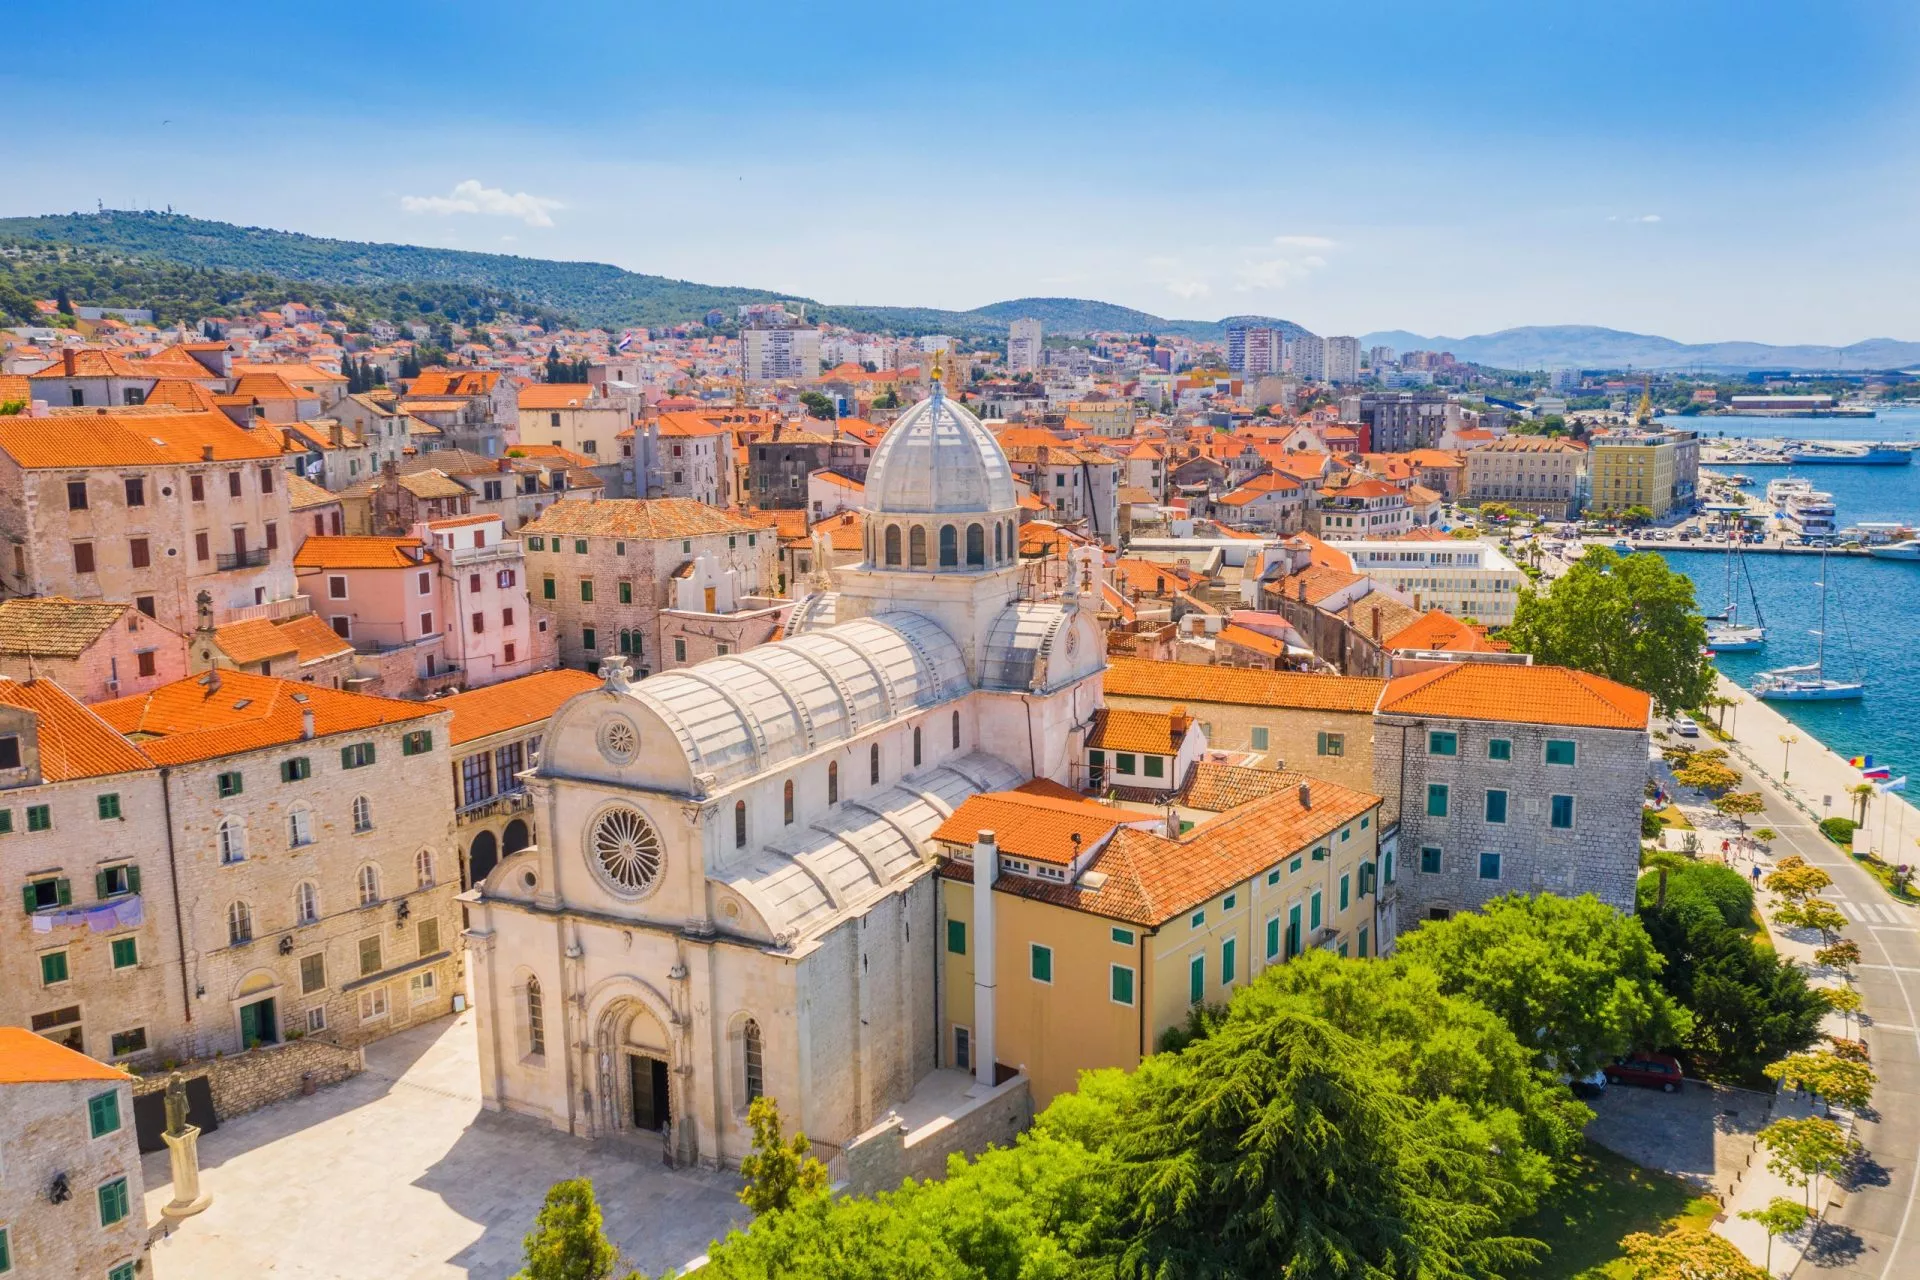 Kroatien, staden Sibenik, panoramautsikt över den gamla stadskärnan och katedralen St James, det viktigaste arkitektoniska monumentet från renässansperioden i Kroatien, UNESCO:s världsarv